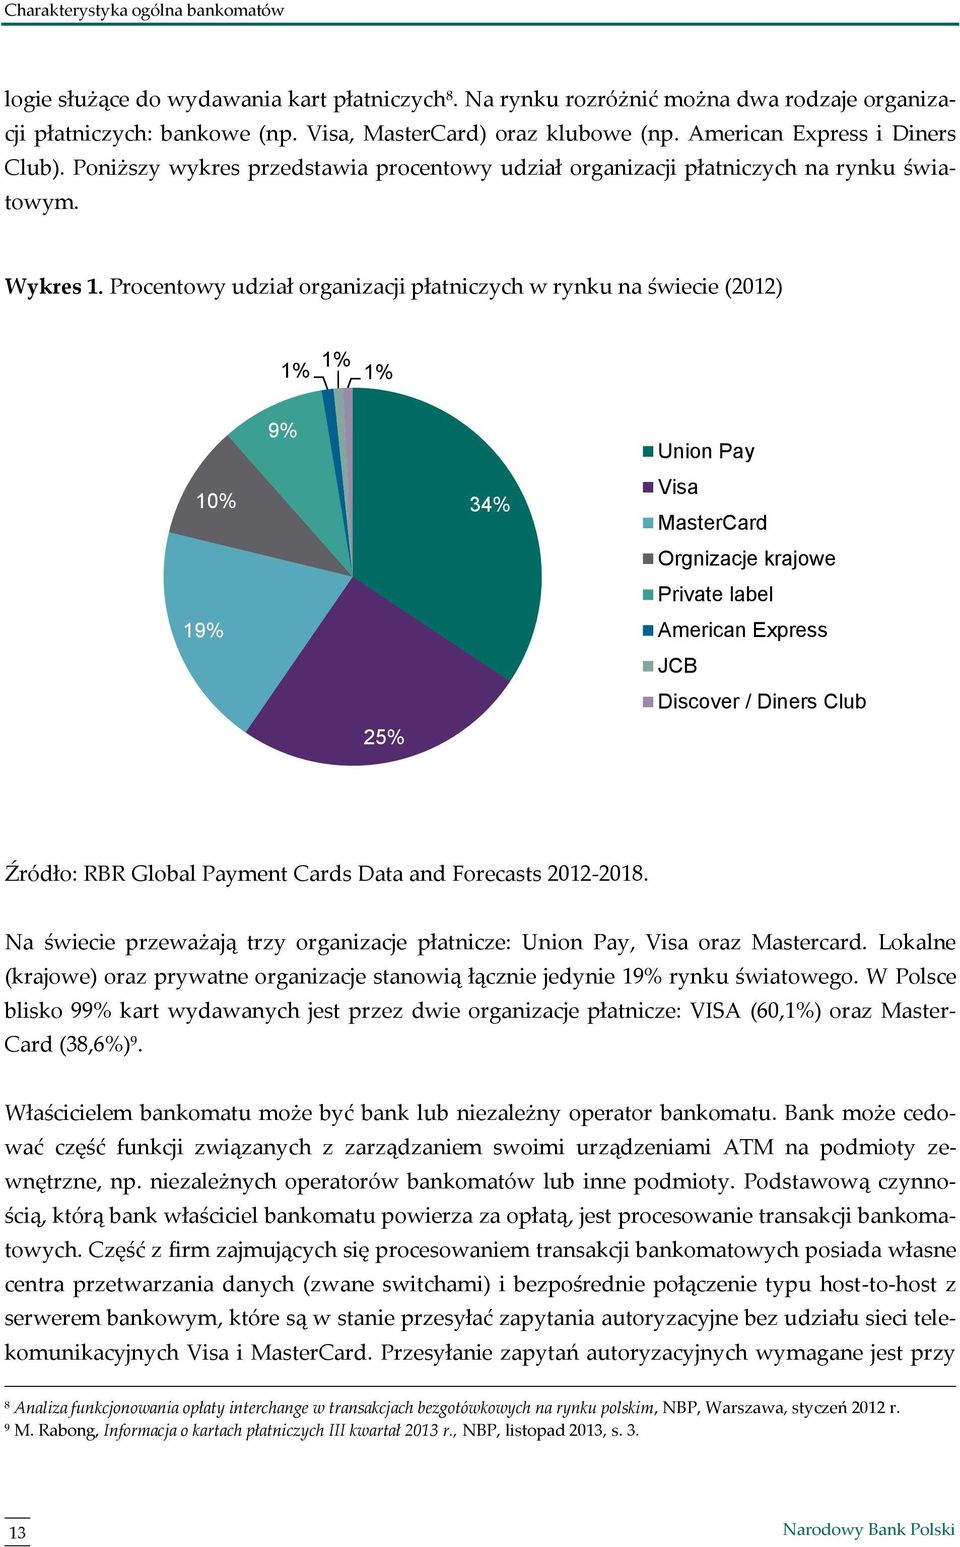 Procentowy udział organizacji płatniczych w rynku na świecie (2012) 1% 1% 1% 10% 19% 9% 25% 34% Union Pay Visa MasterCard Orgnizacje krajowe Private label American Express JCB Discover / Diners Club